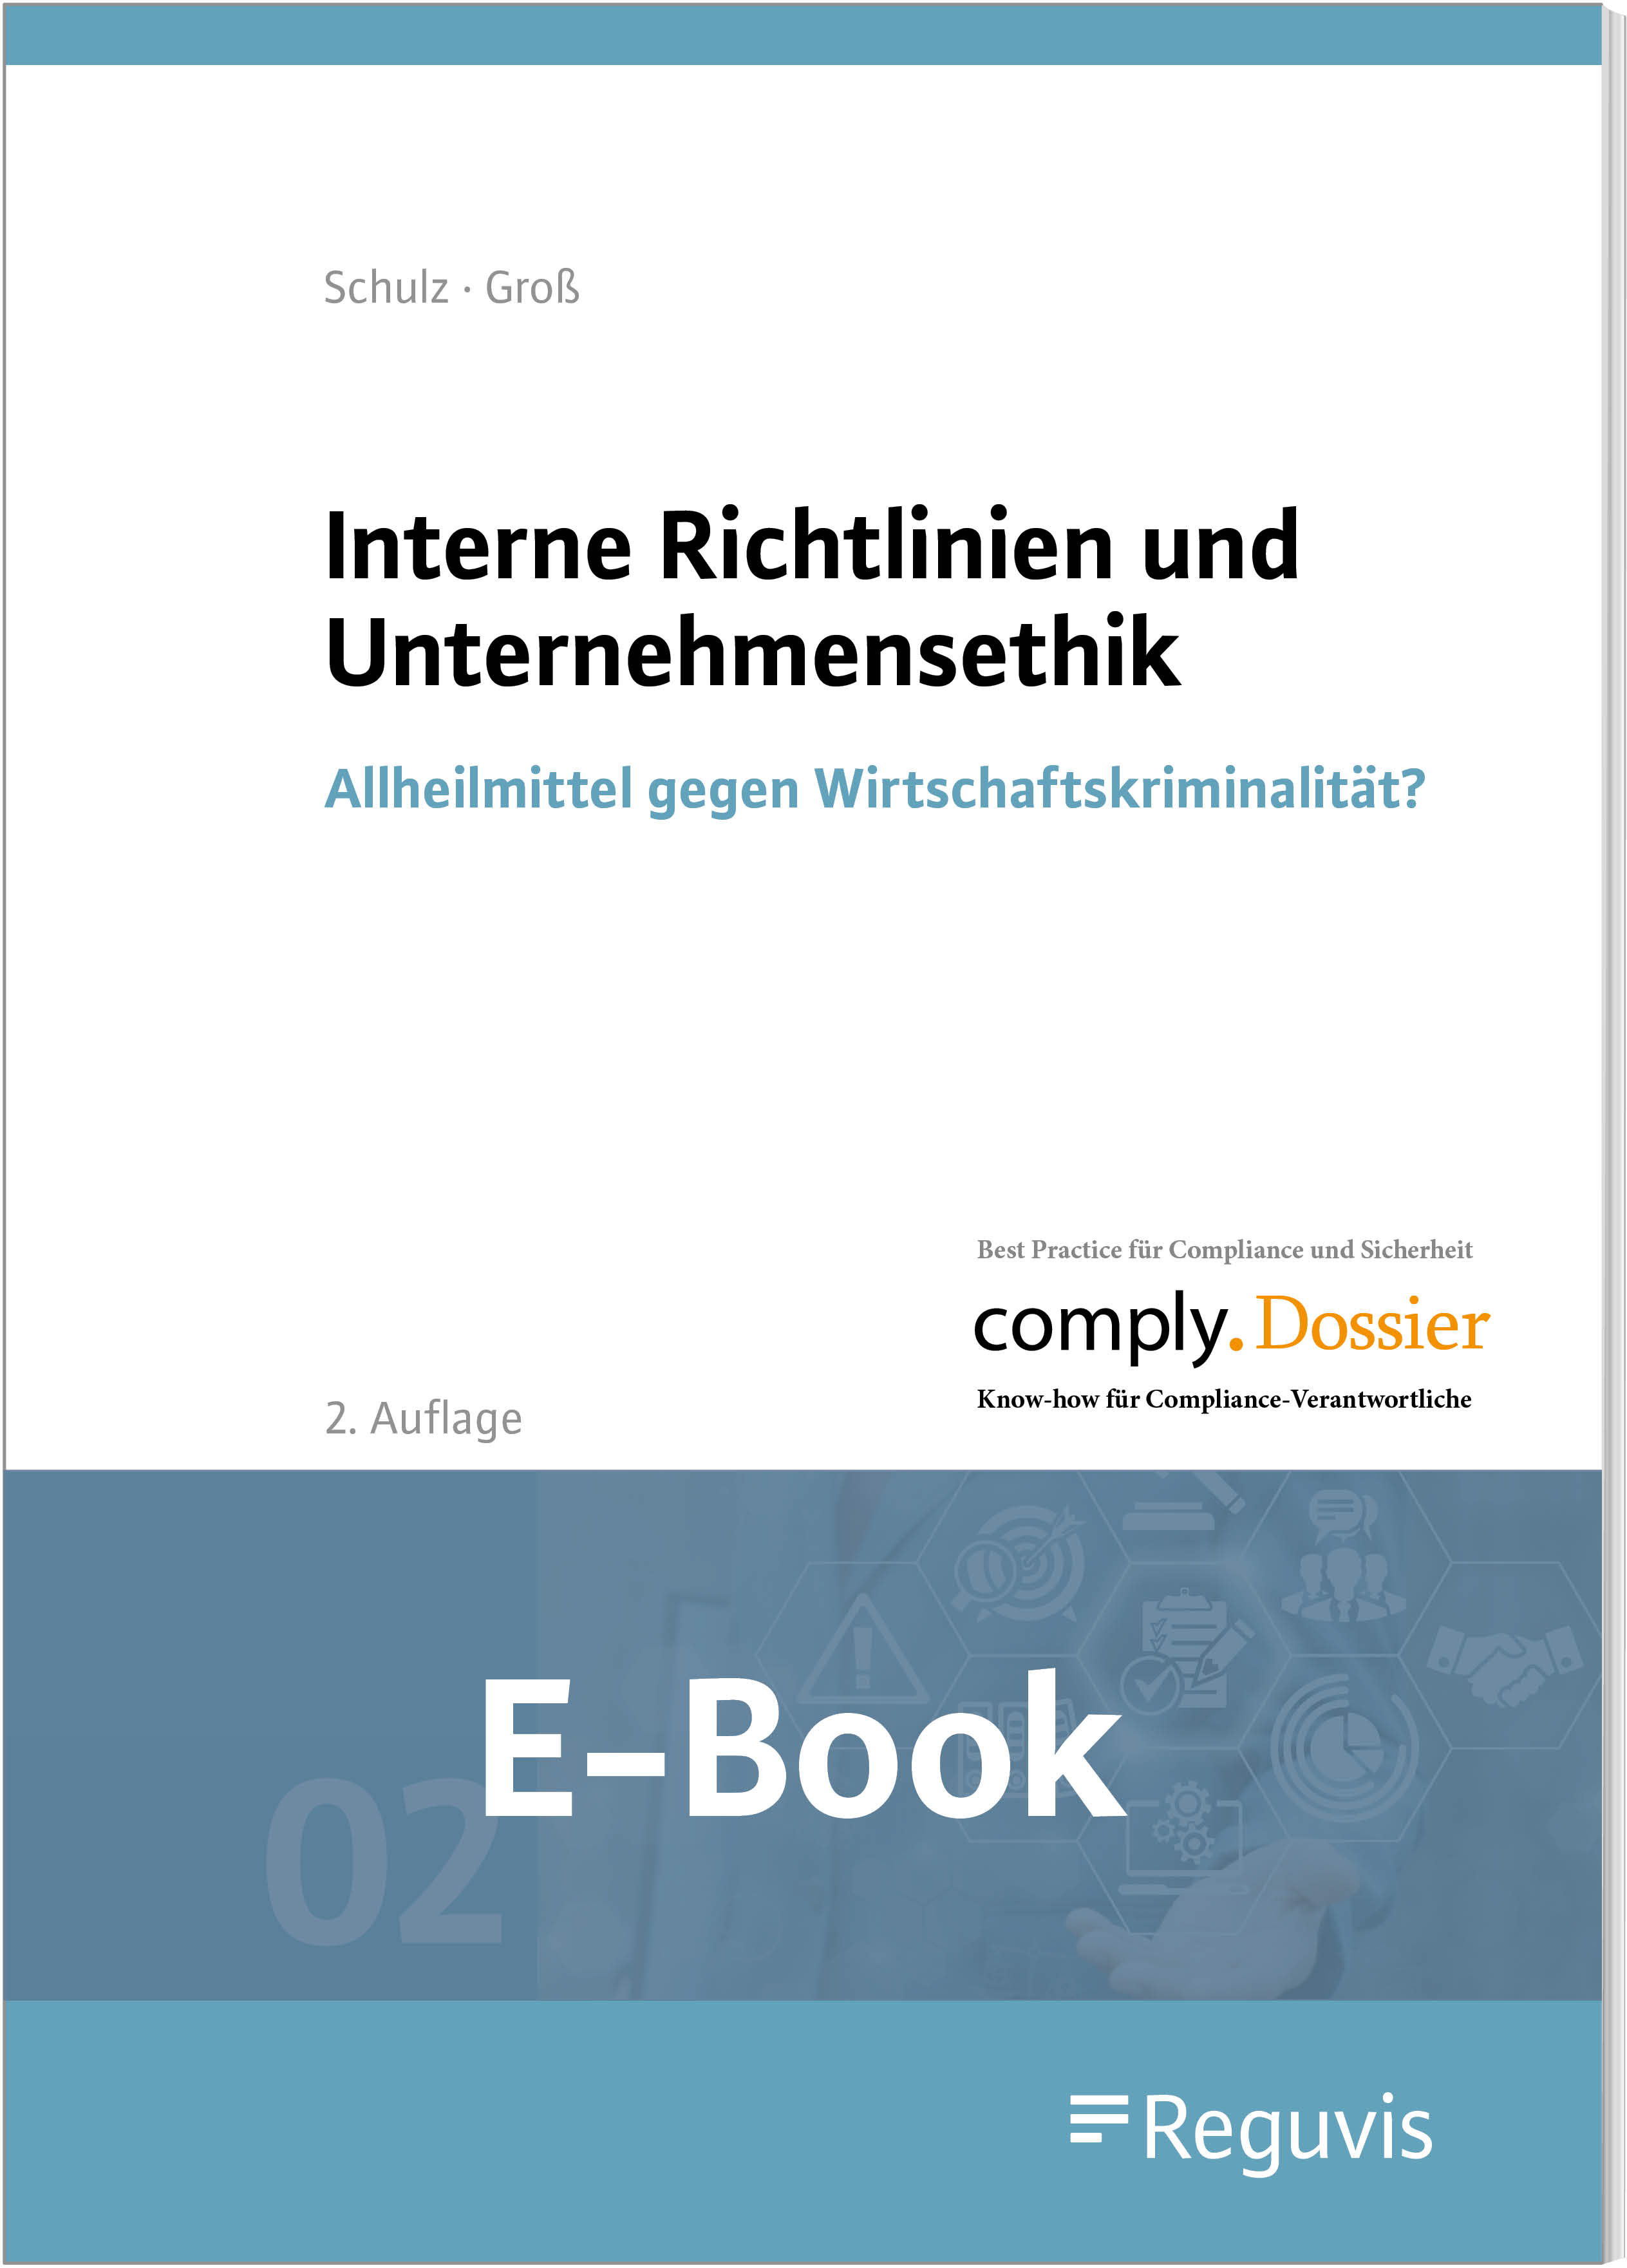 Groß/Schulz; Interne Richtlinien u.Unternehmensethik E-Book